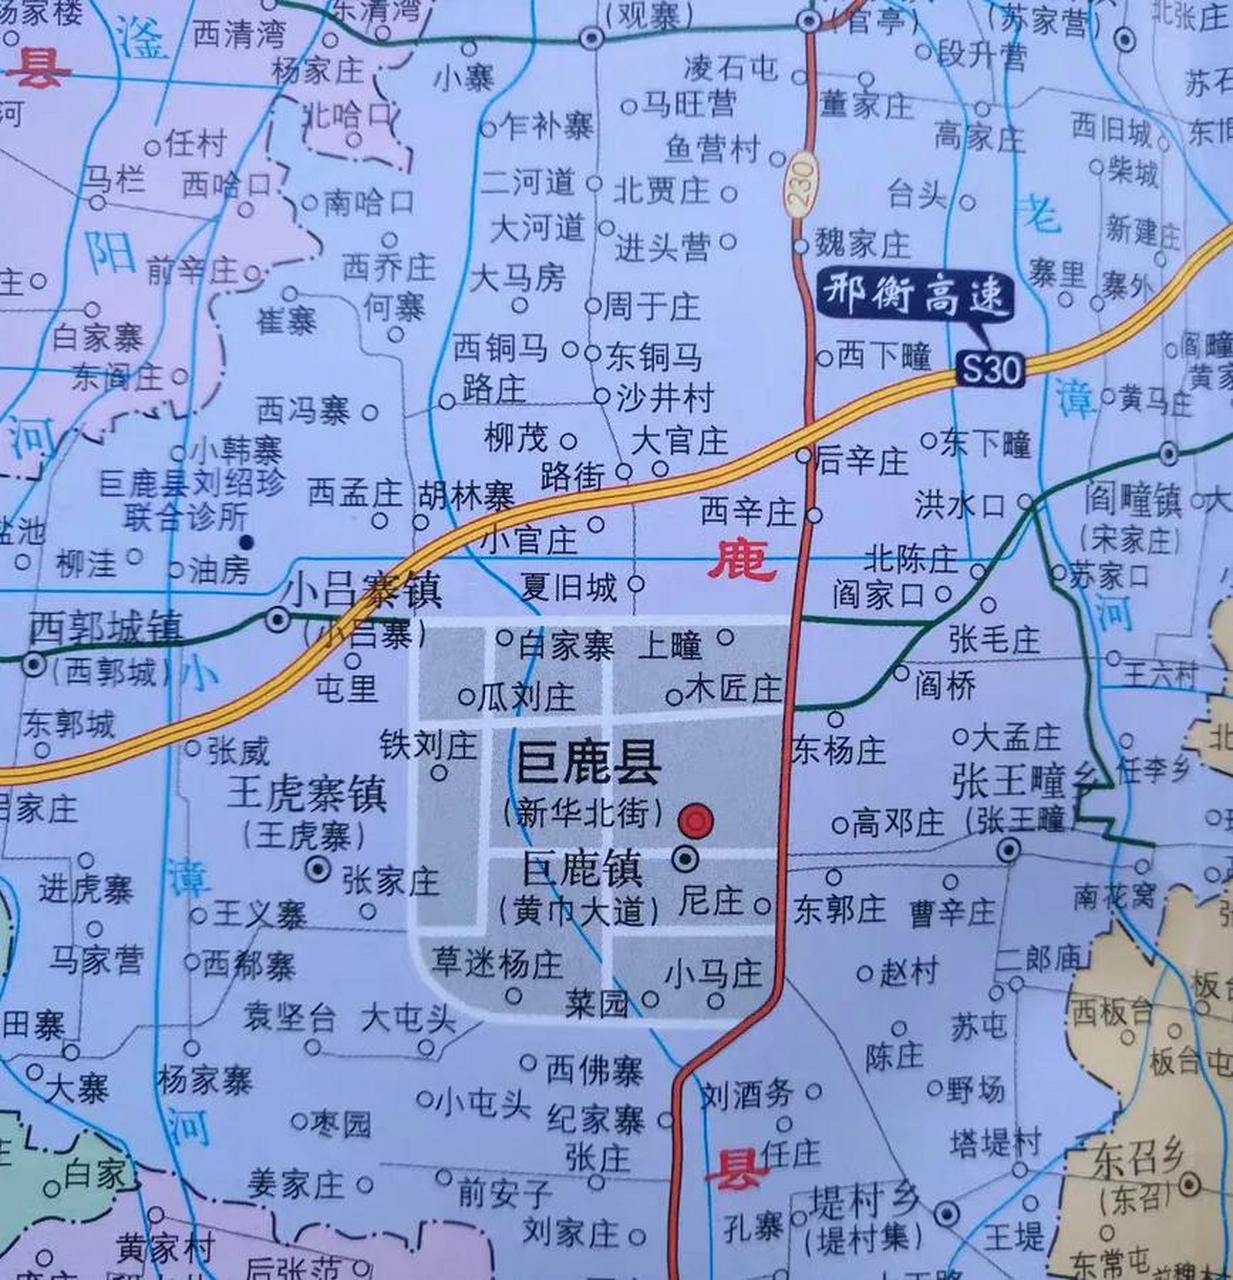 巨鹿县村庄地图图片